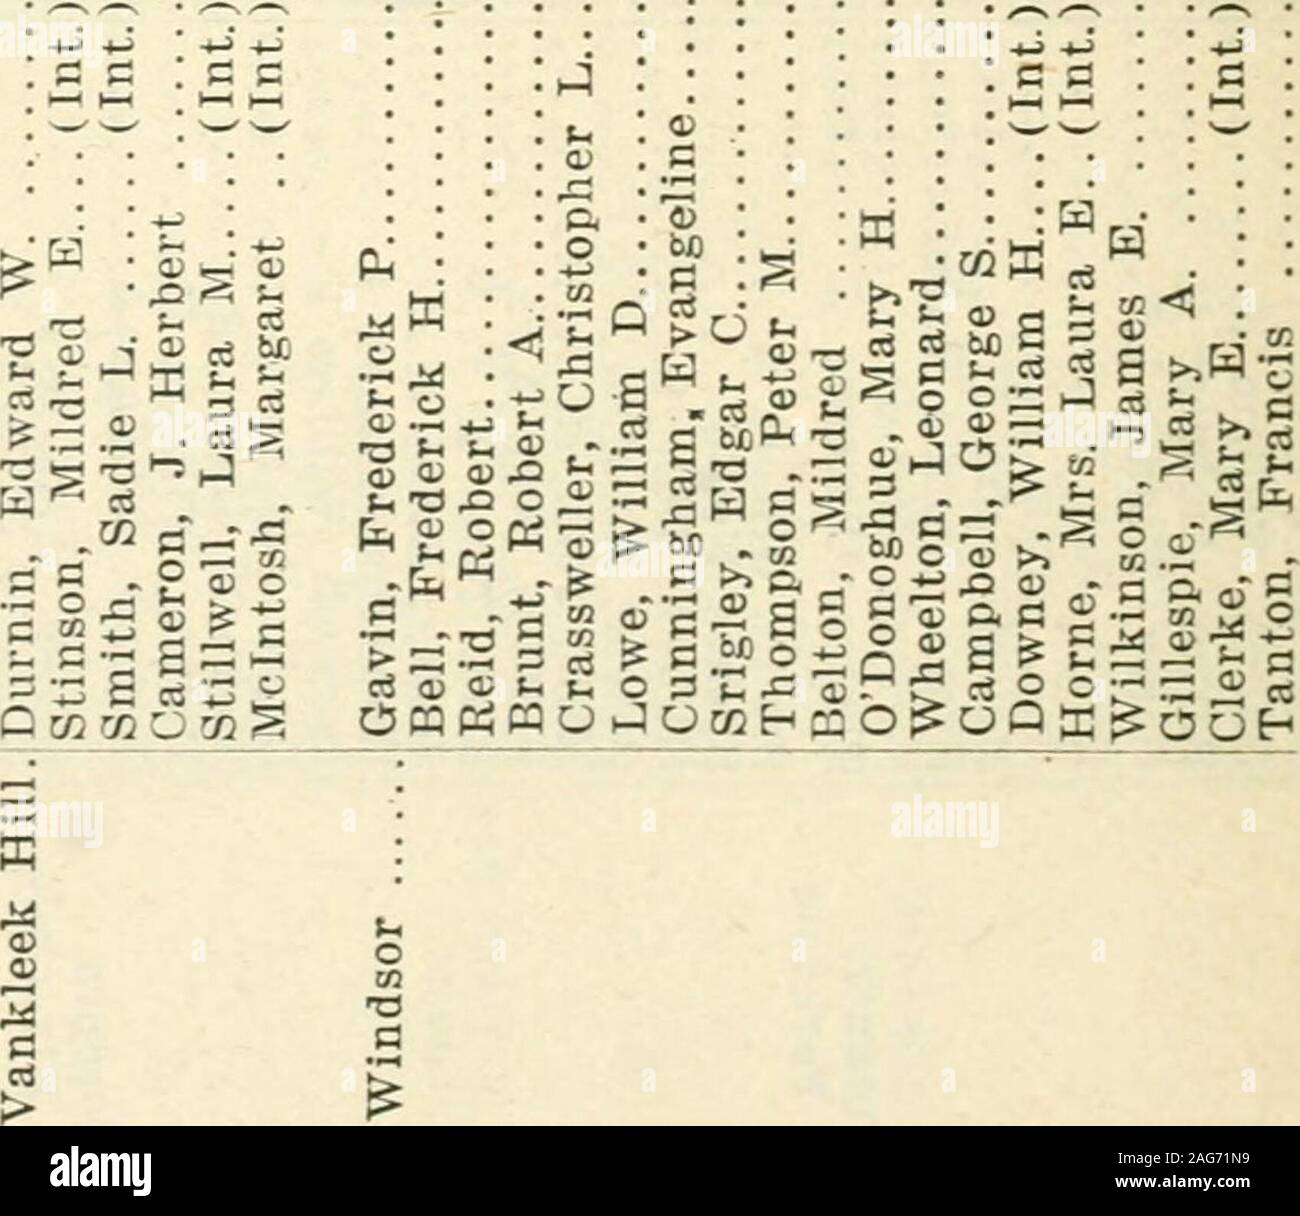 Ontario Documentos Del Periodo De Sesiones 1918 Nº17 T 1 Cd Hj Rt Qj O Gt Si N T 2 1 1 I Gt Mn Oo Si Yo Q 3